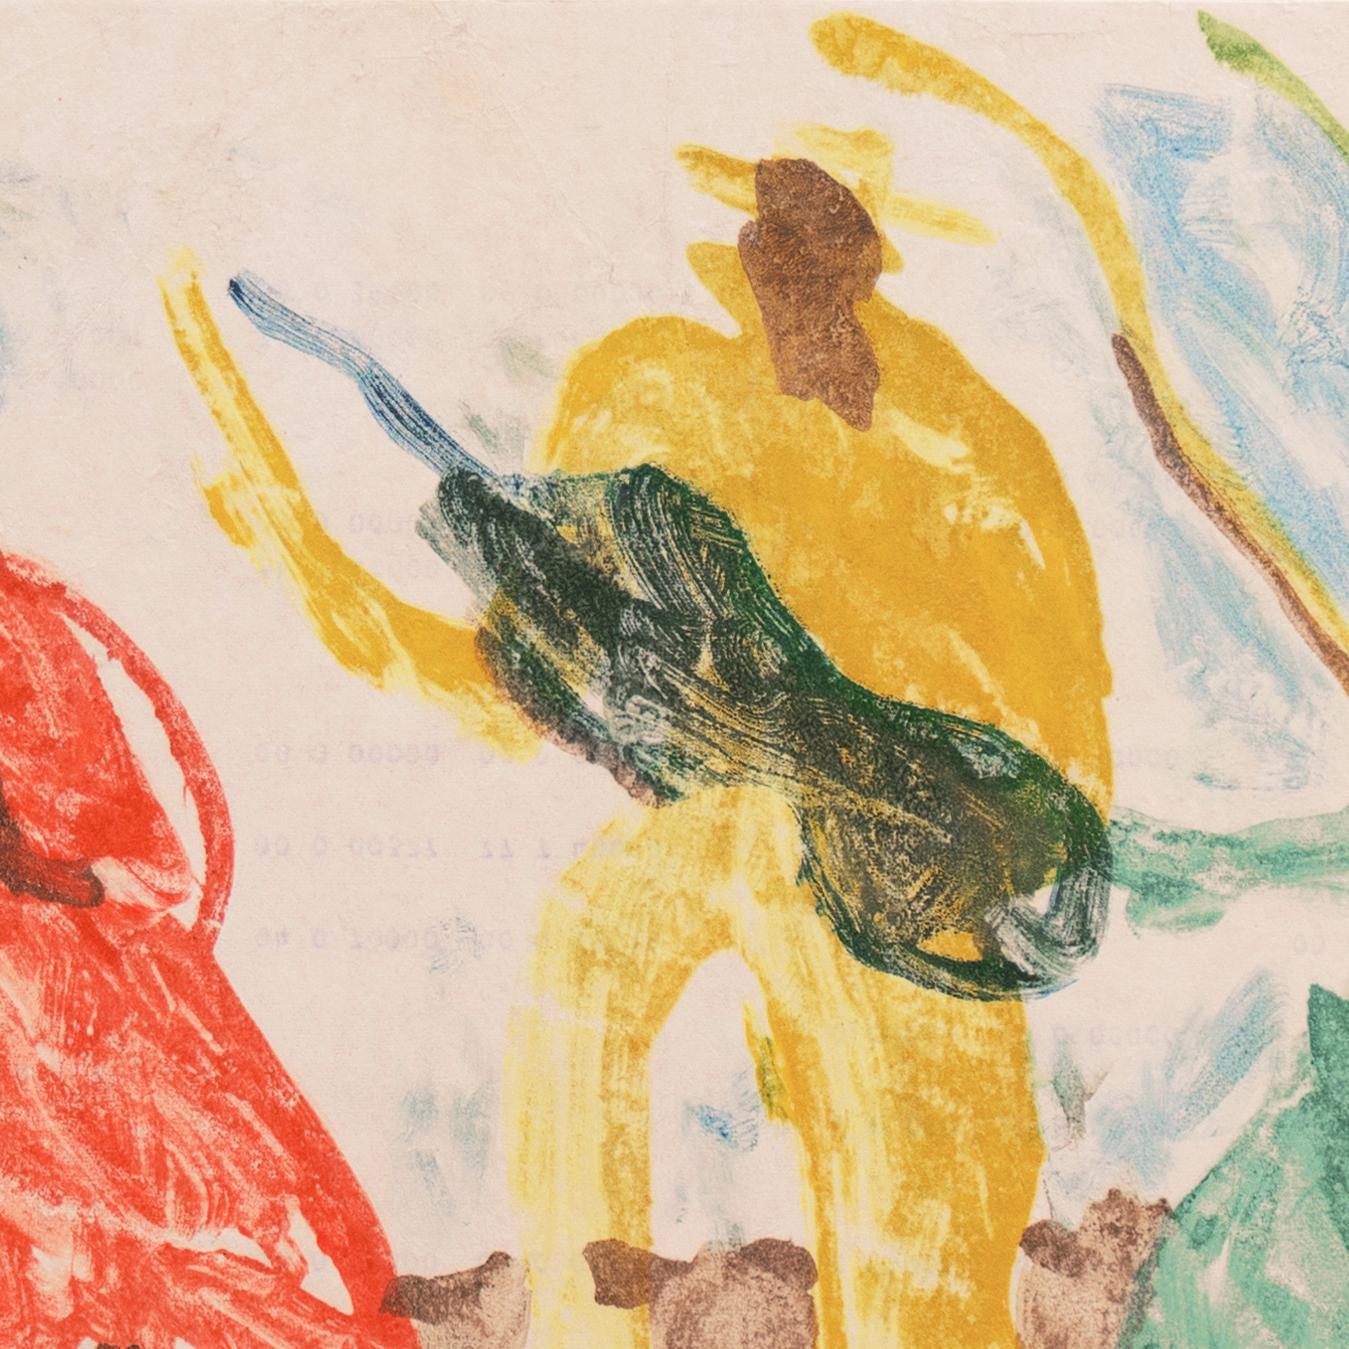 Verso gestempelt mit dem Nachlassstempel von Victor Di Gesu (Amerikaner, 1914-1988), geschaffen um 1955.

Eine postimpressionistische figurale Monotypie, die eine Frau unter einem Baum im Vordergrund zeigt, hinter der ein Gitarrist und eine